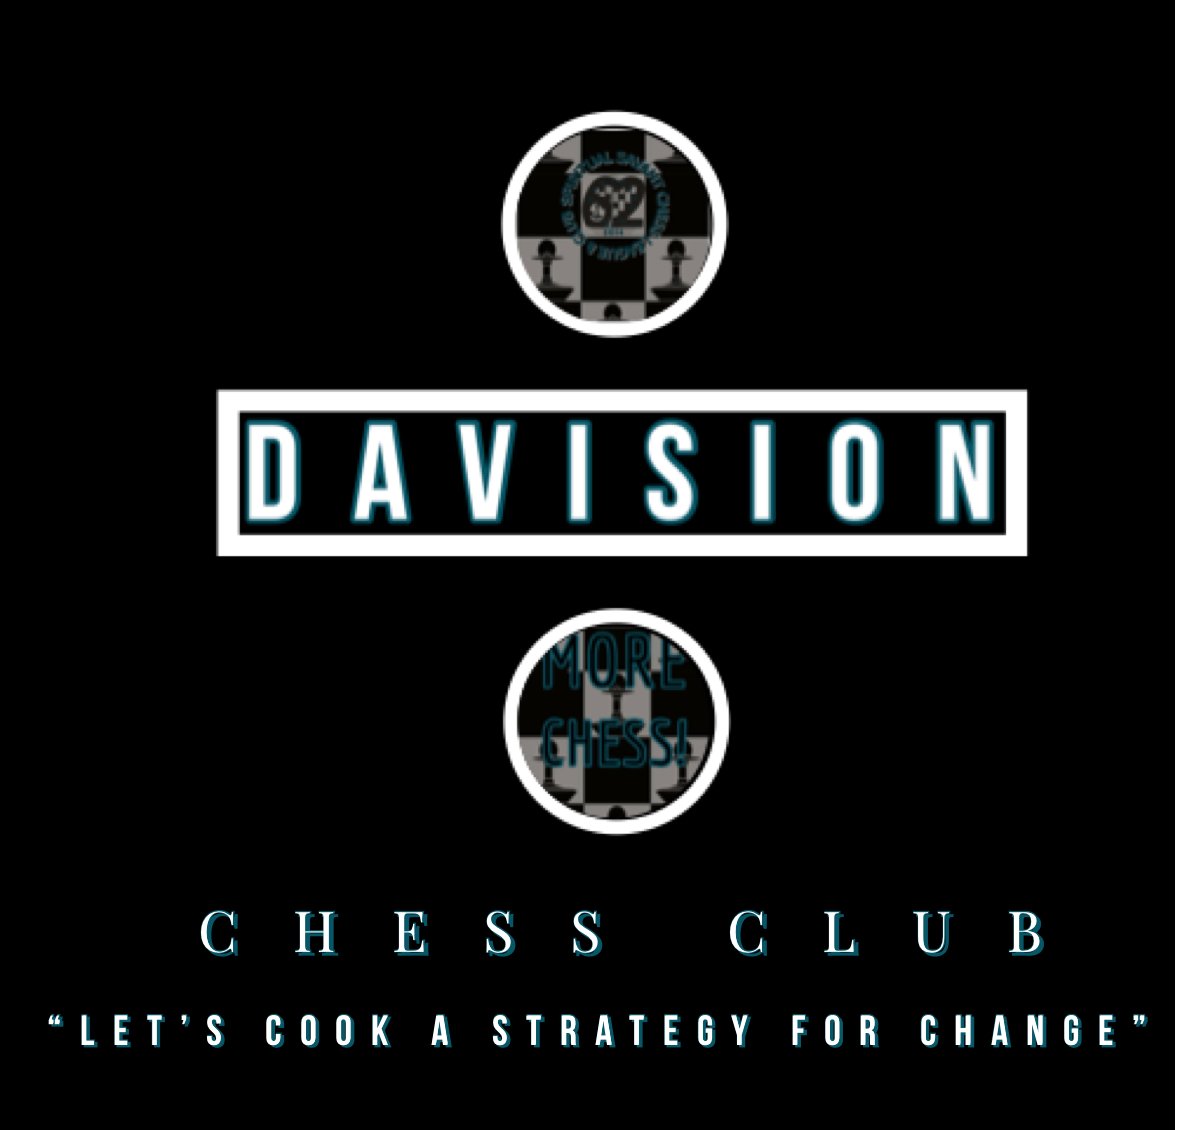 DAVISION CHESS CLUB